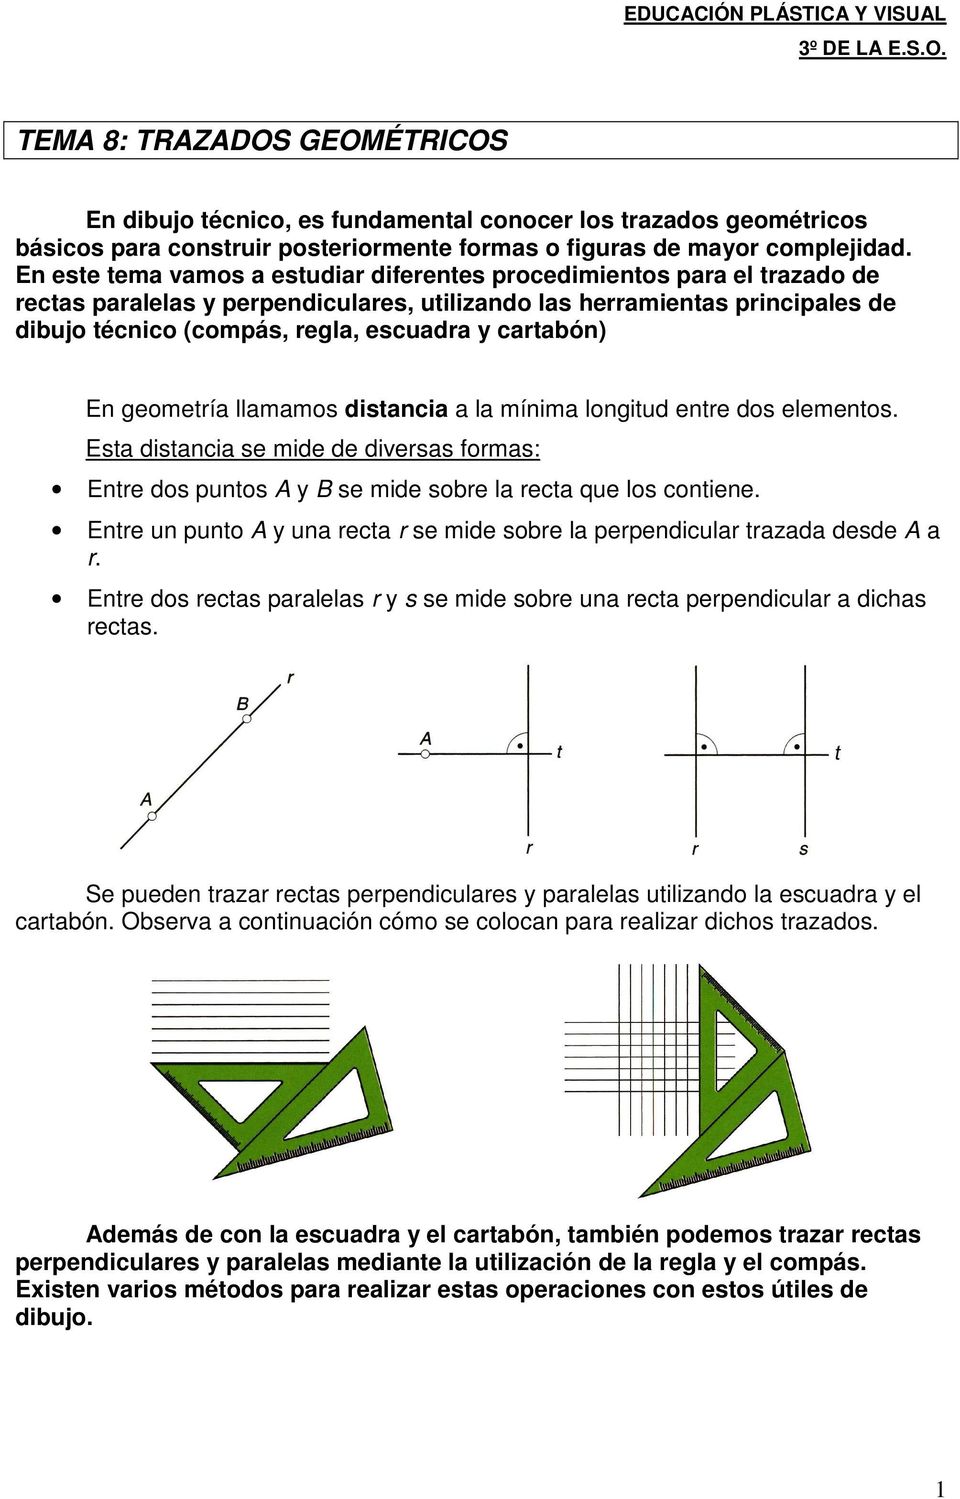 En este tema vamos a estudiar diferentes procedimientos para el trazado de rectas paralelas y perpendiculares, utilizando las herramientas principales de dibujo técnico (compás, regla, escuadra y